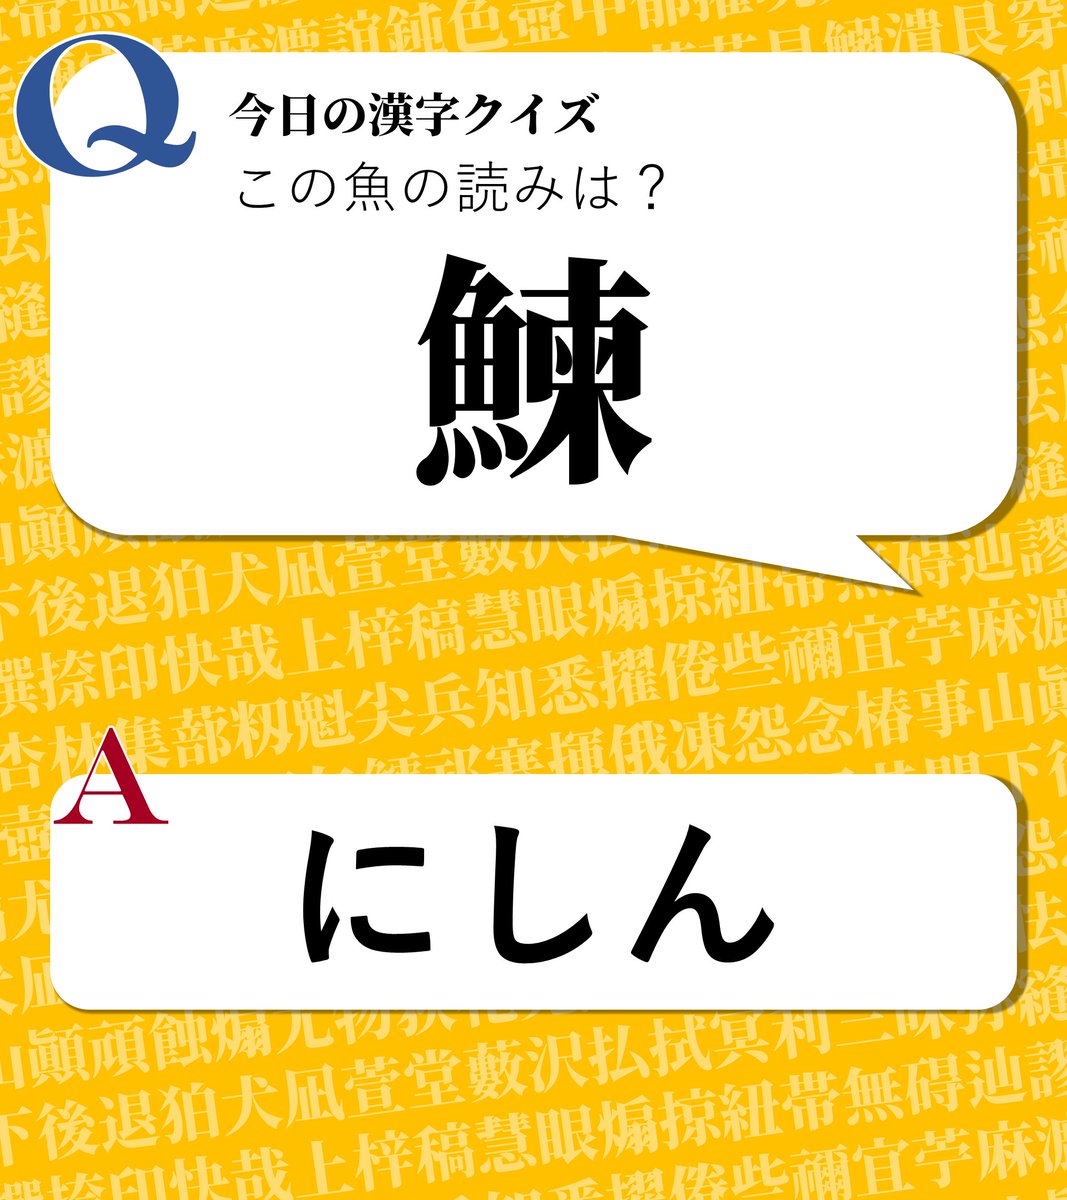 今日の漢字クイズ 今日の漢字クイズ この魚の読みは 鰊 答えは画像をクリック 漢字 漢字クイズ 魚へんの 漢字